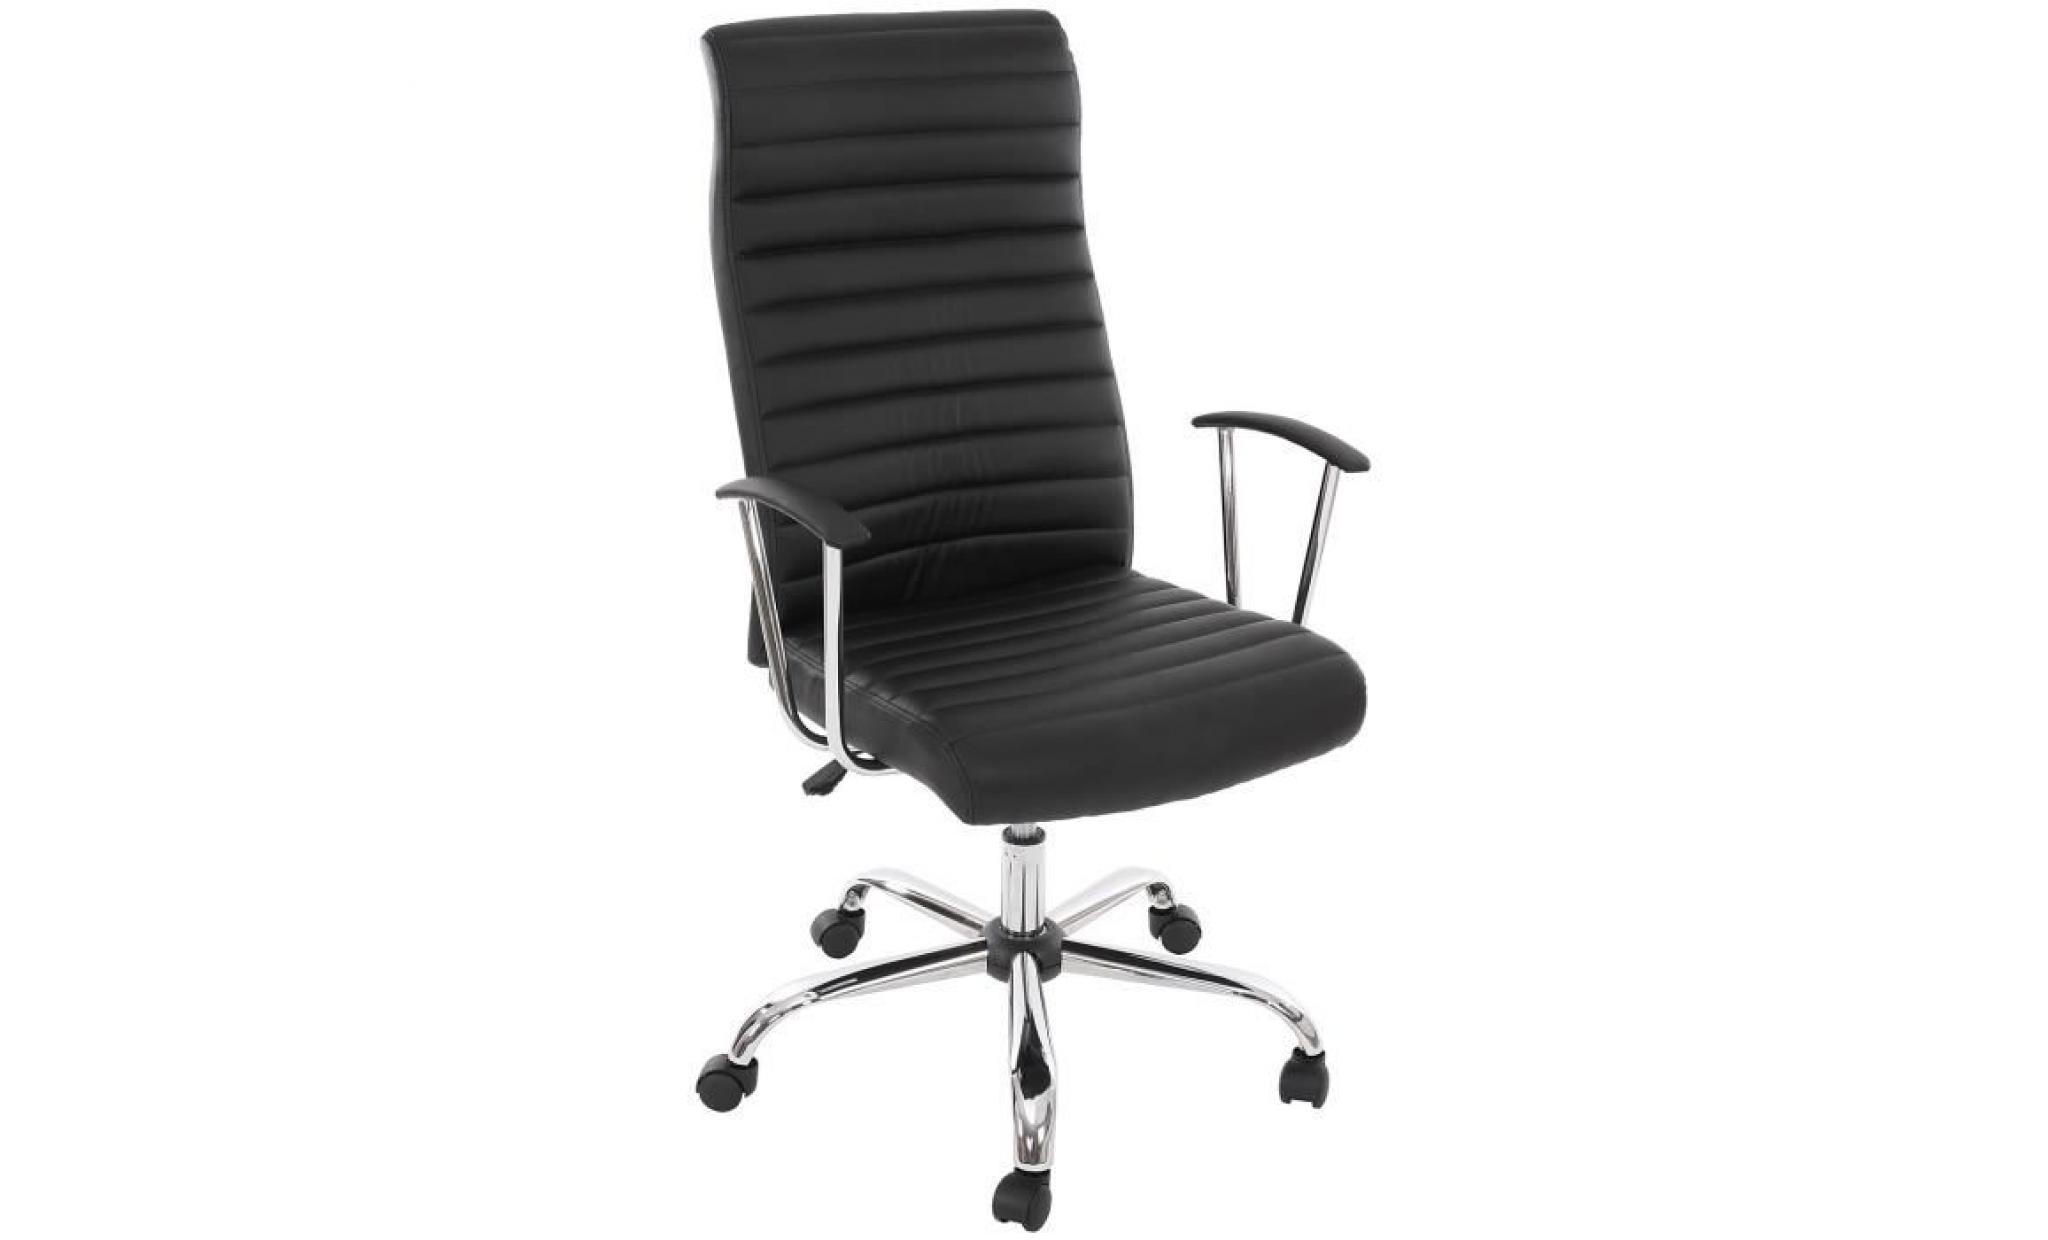 Chaise de Bureau pivotante Cagliari, design ergonomique, coloris noir